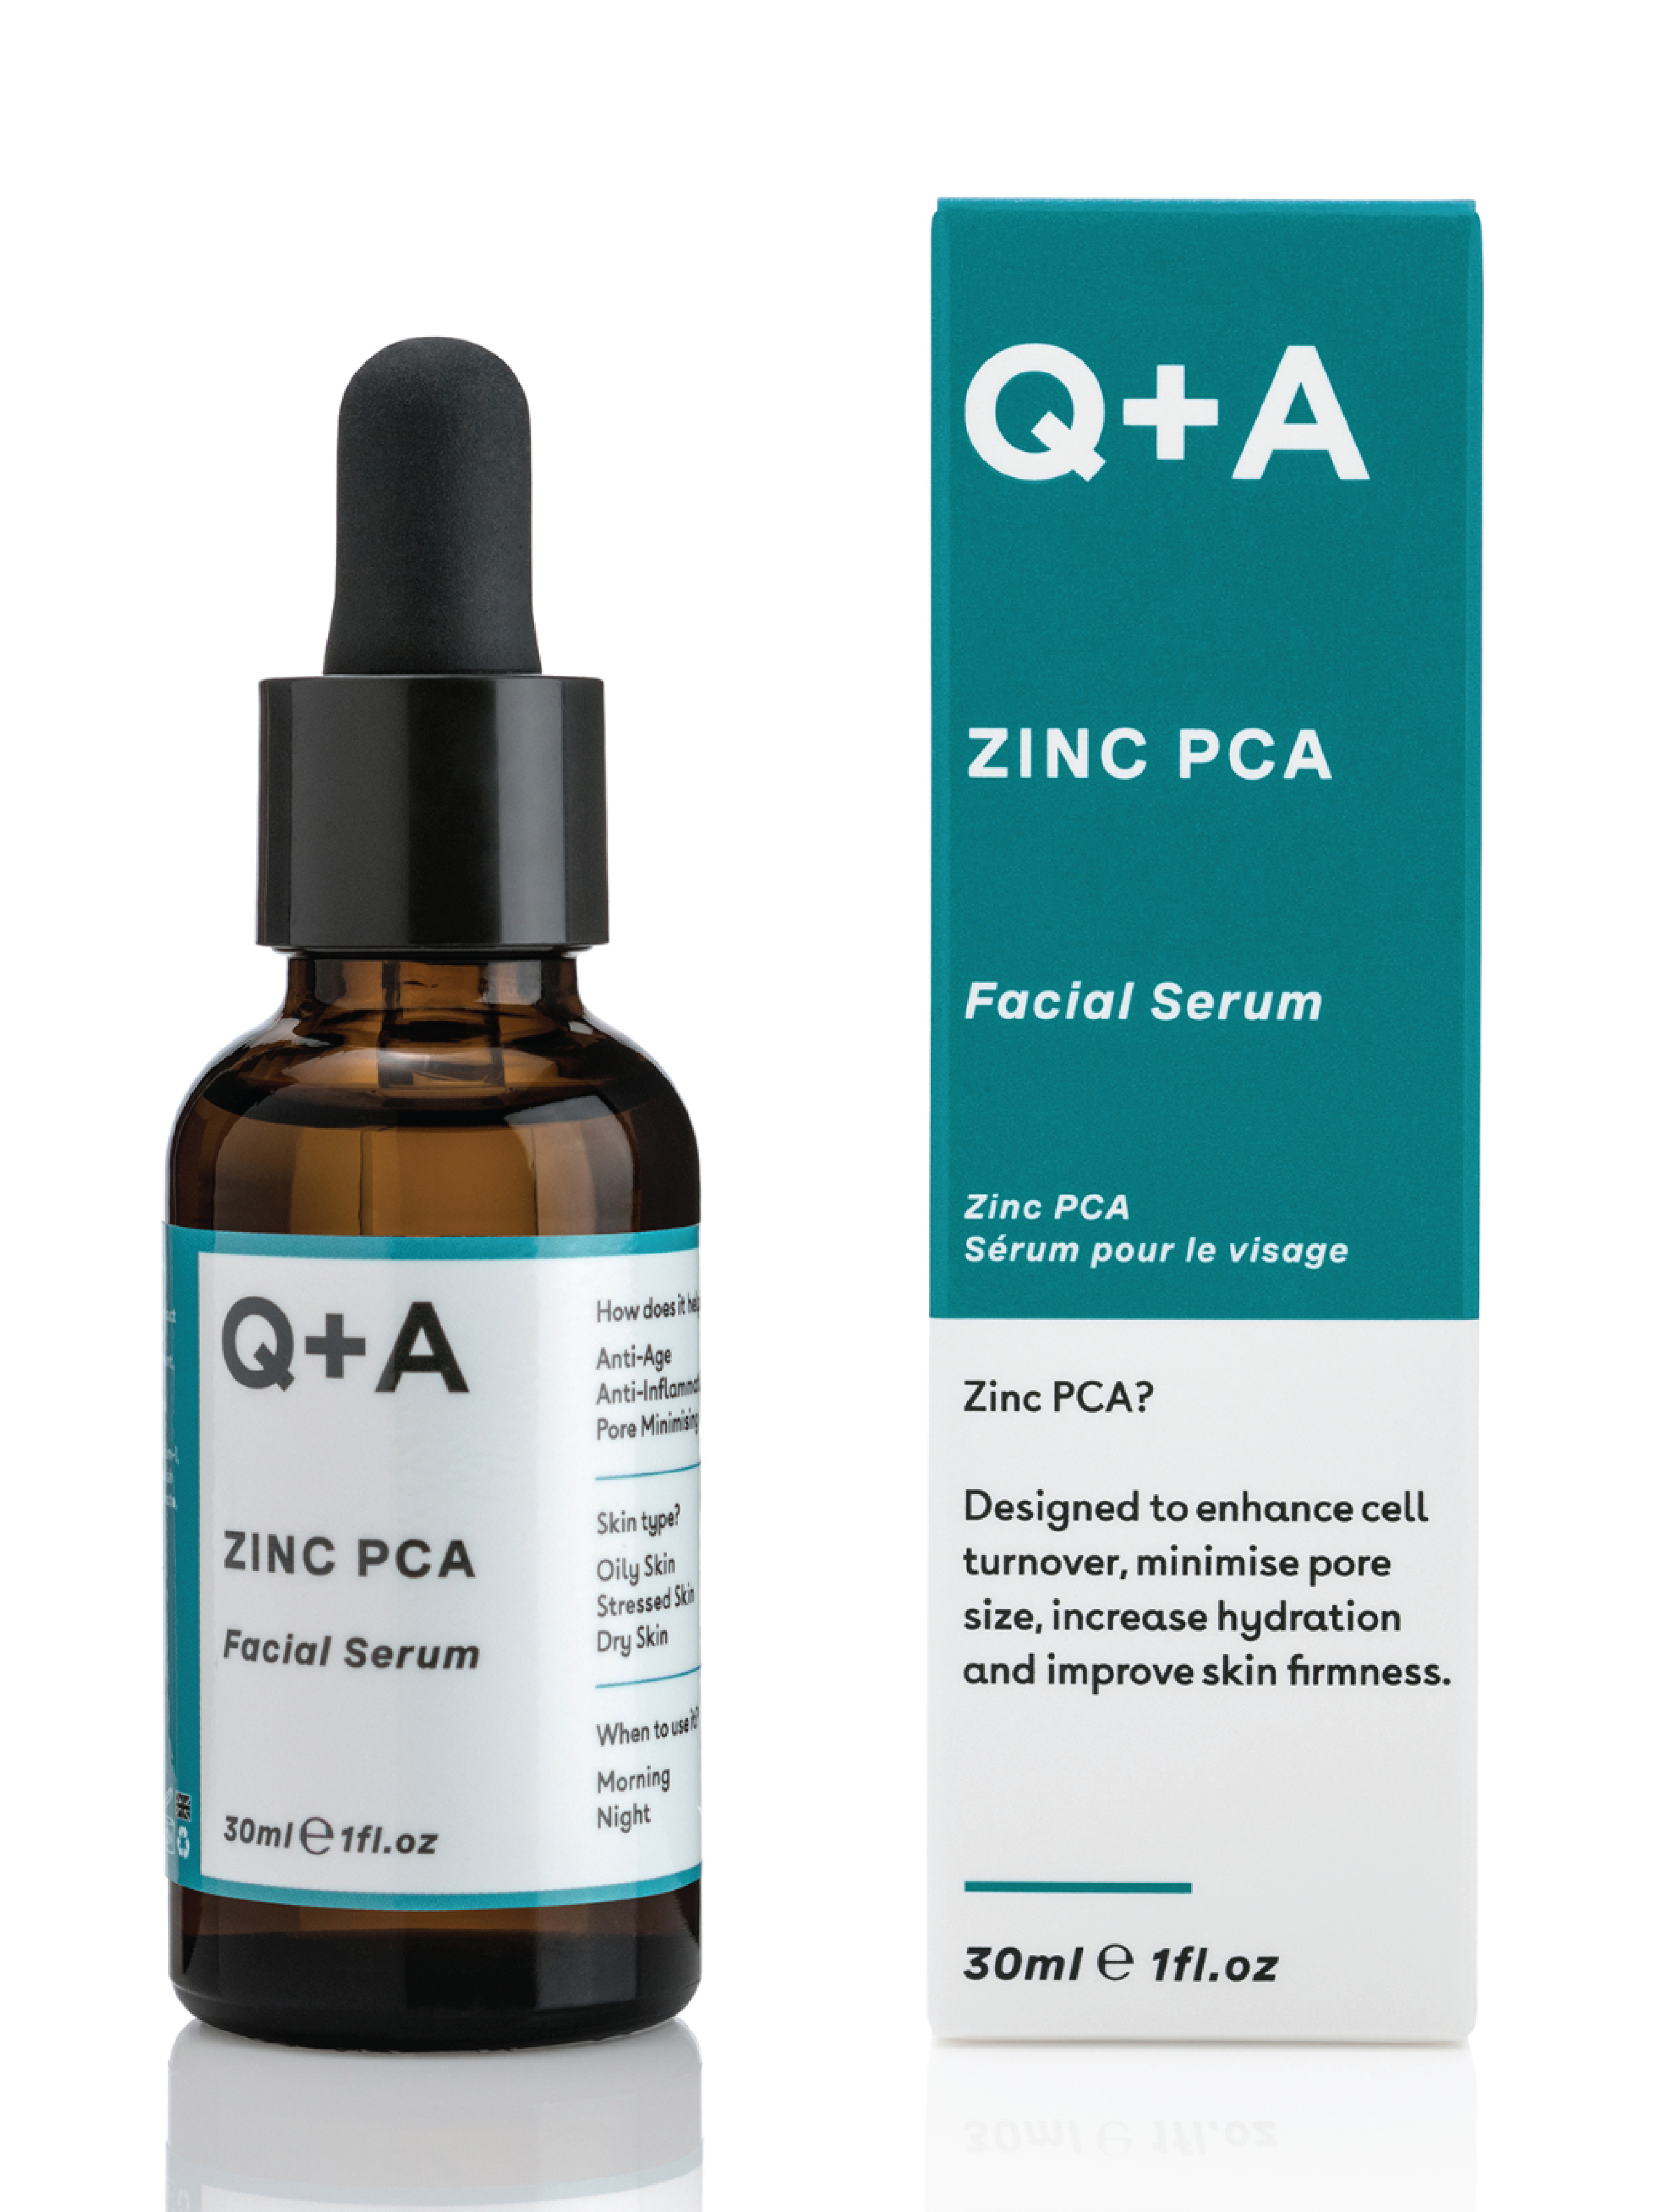 Q+A Zinc PCA Facial Serum, 30 ml